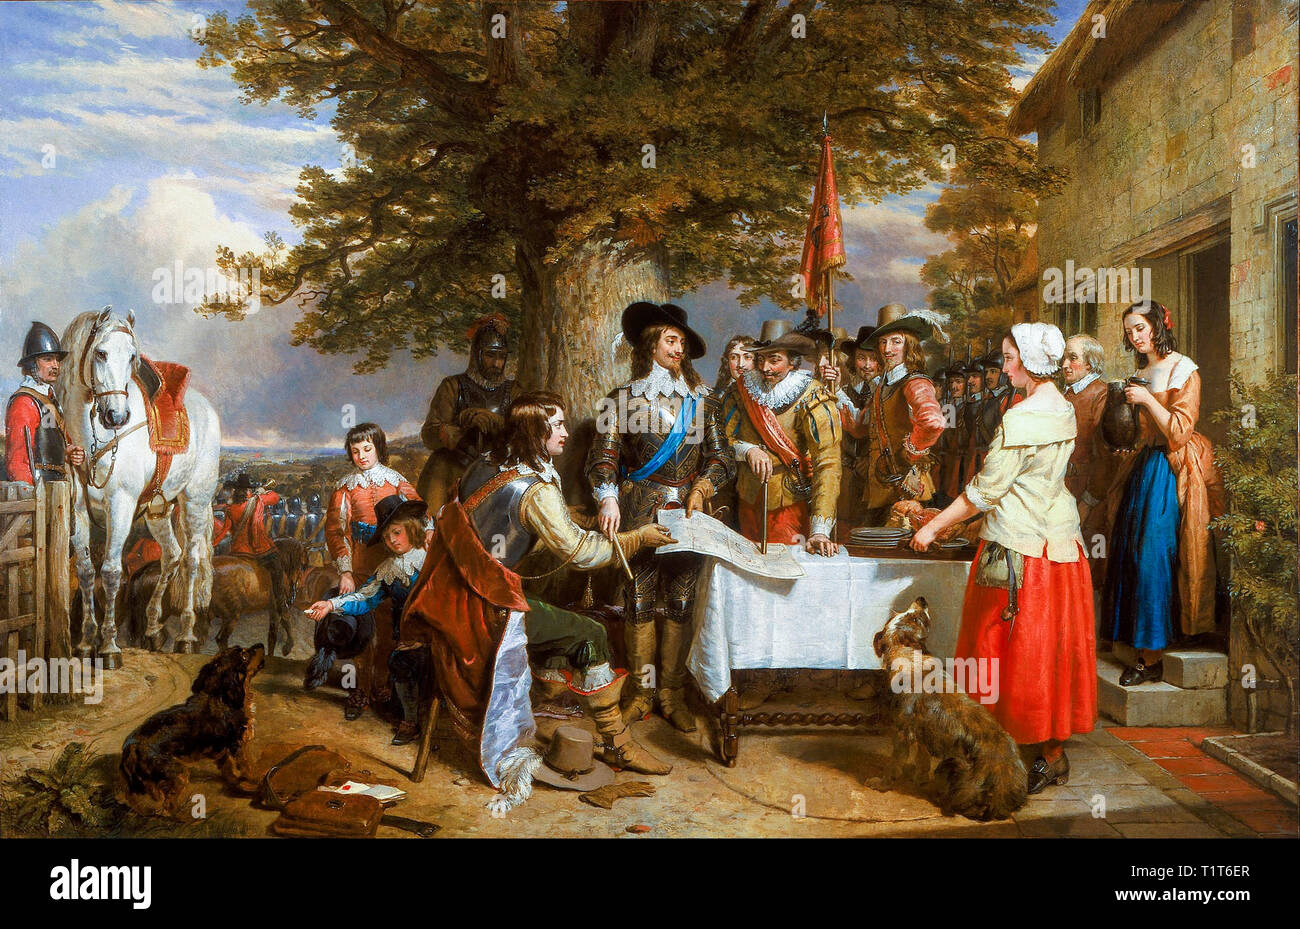 La veille de la bataille d'Edge Hill 1642, Guerre civile anglaise, peinture, Charles Landseer, 1845 Banque D'Images